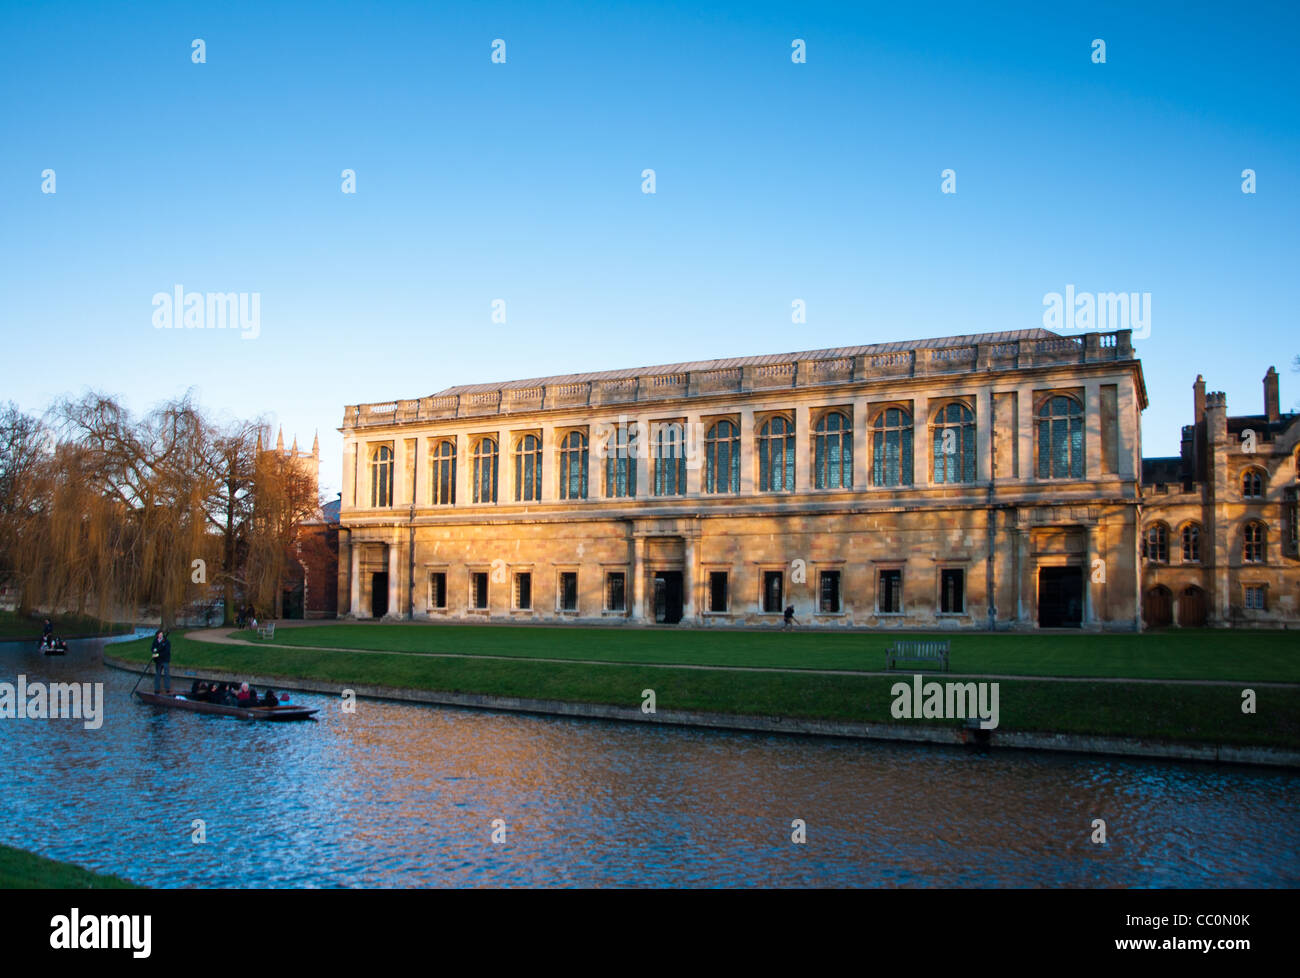 L'Wren Library au coucher du soleil, le Trinity College de Cambridge, avec à l'avant en barque sur la rivière Cam, UK Banque D'Images